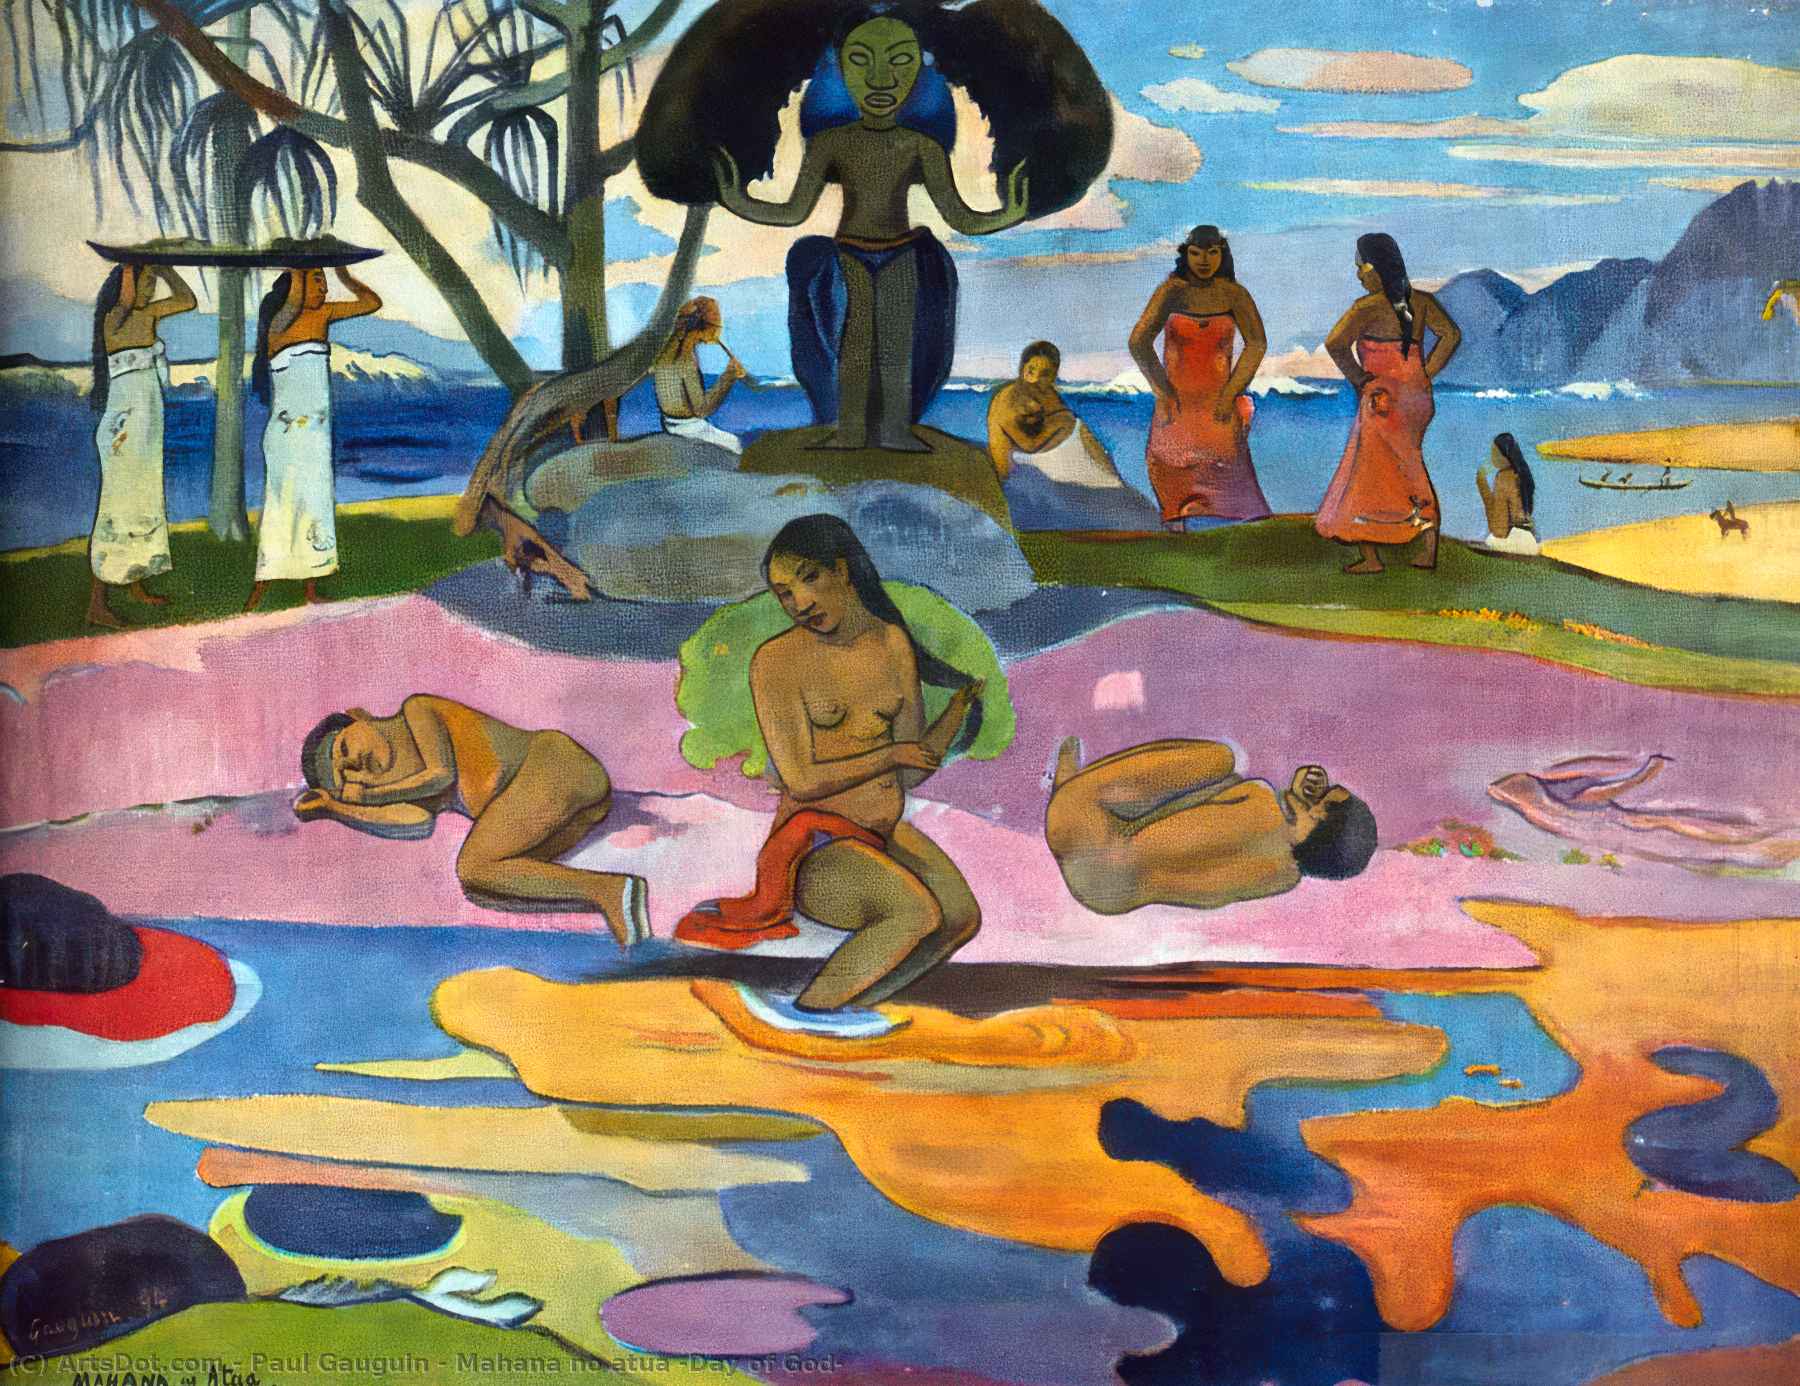 WikiOO.org - دایره المعارف هنرهای زیبا - نقاشی، آثار هنری Paul Gauguin - Mahana no atua (Day of God)